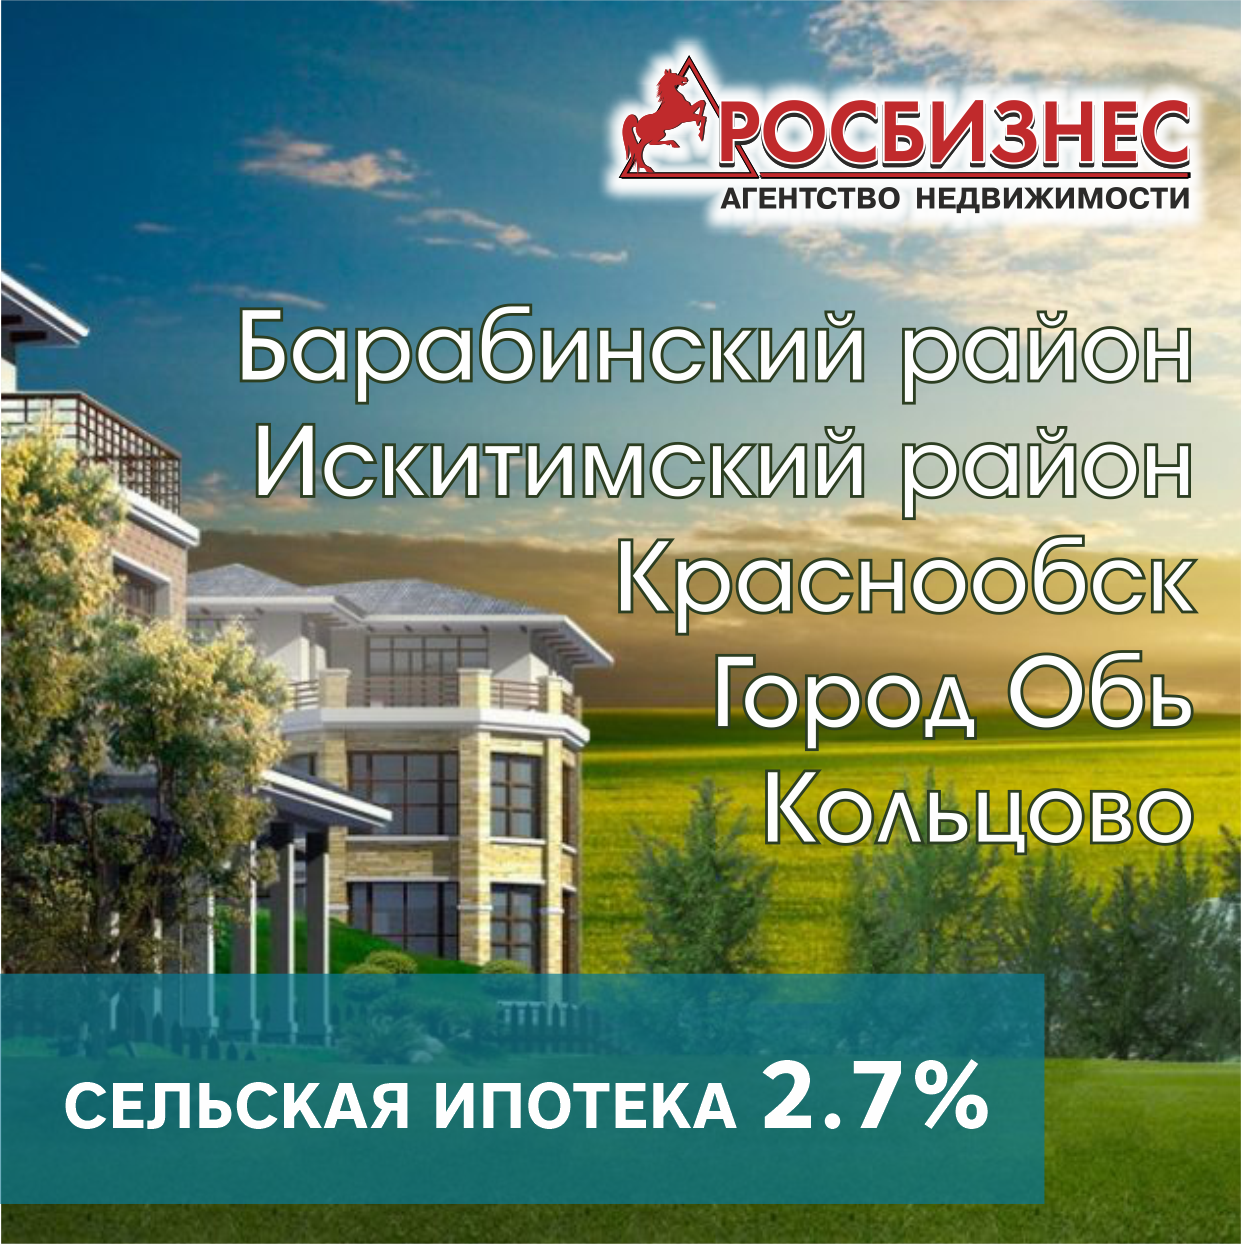 Сельская ипотека 2,7%